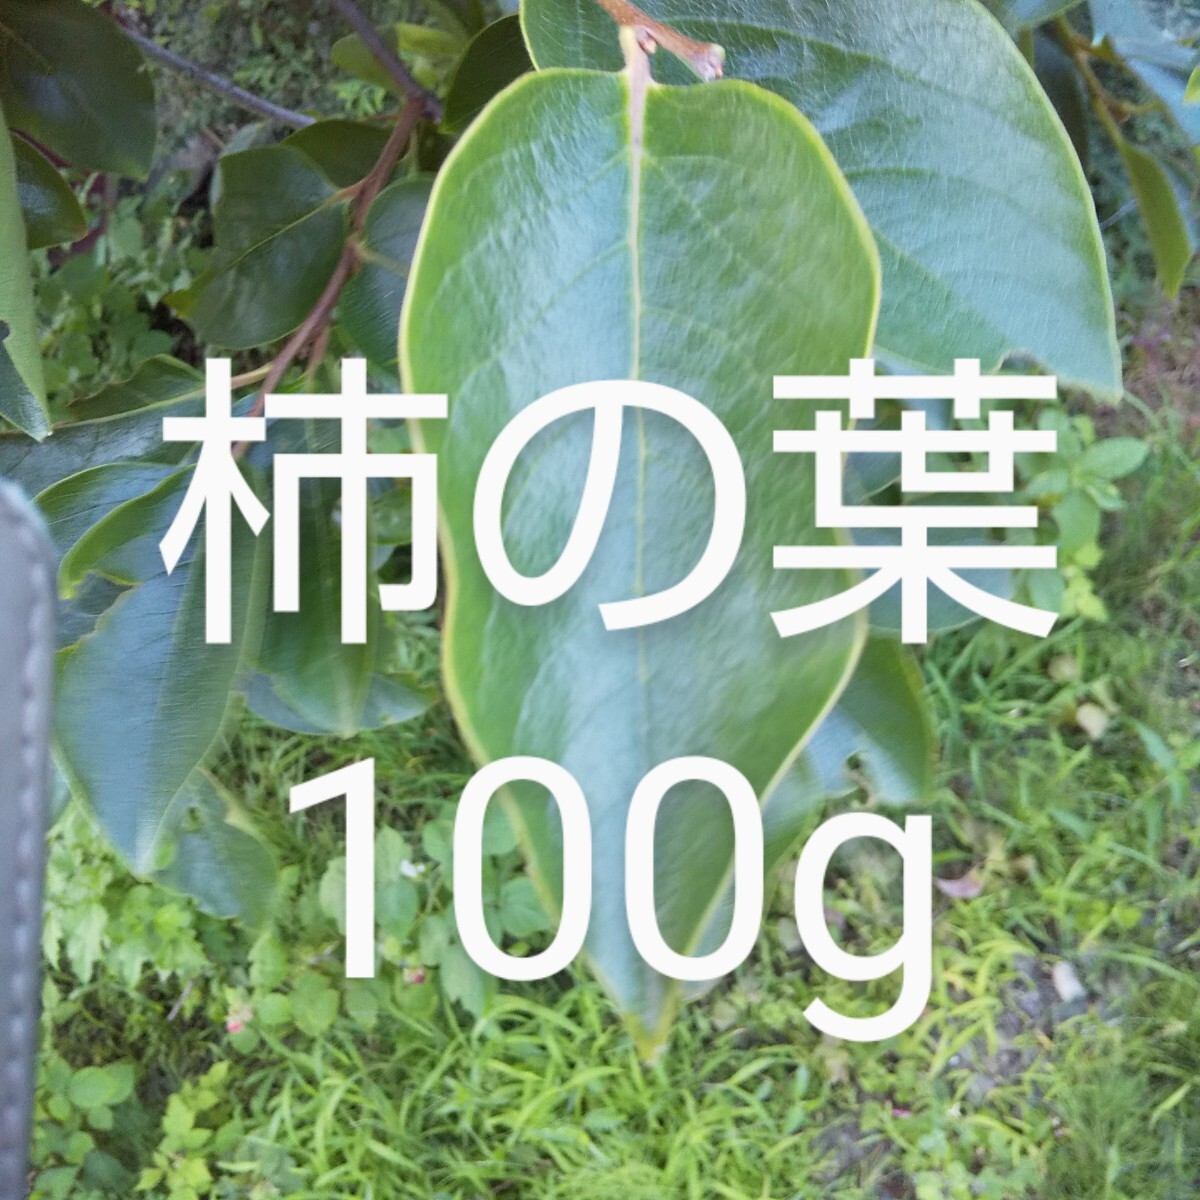  хурма. лист 100g ветка имеется свежий пестициды не использование 